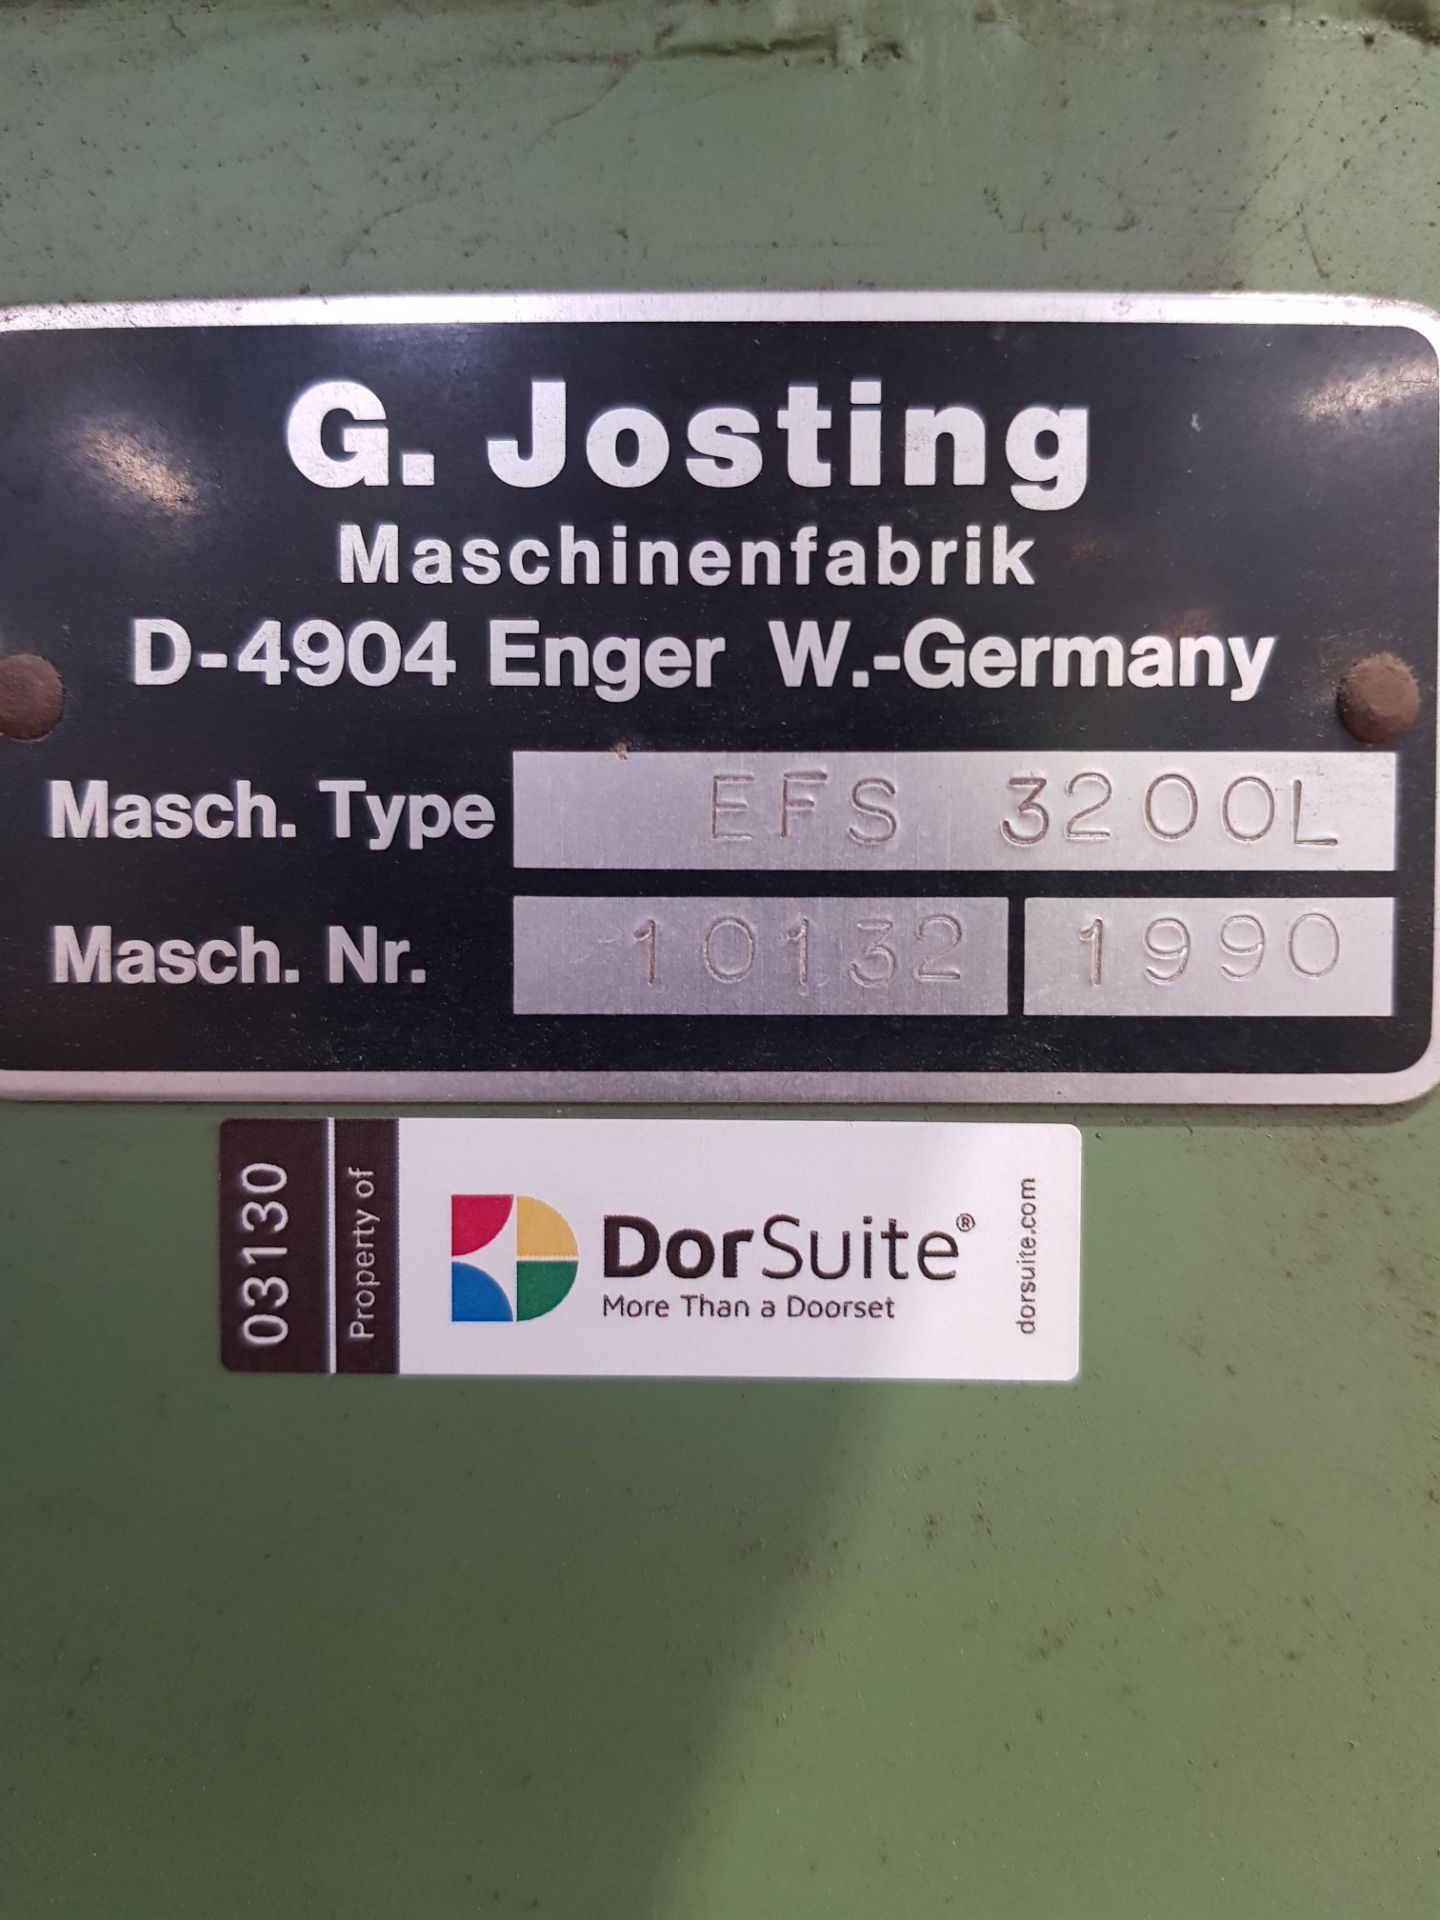 Veneer Guillotine Josting EFS3200L Doorline - Image 2 of 2